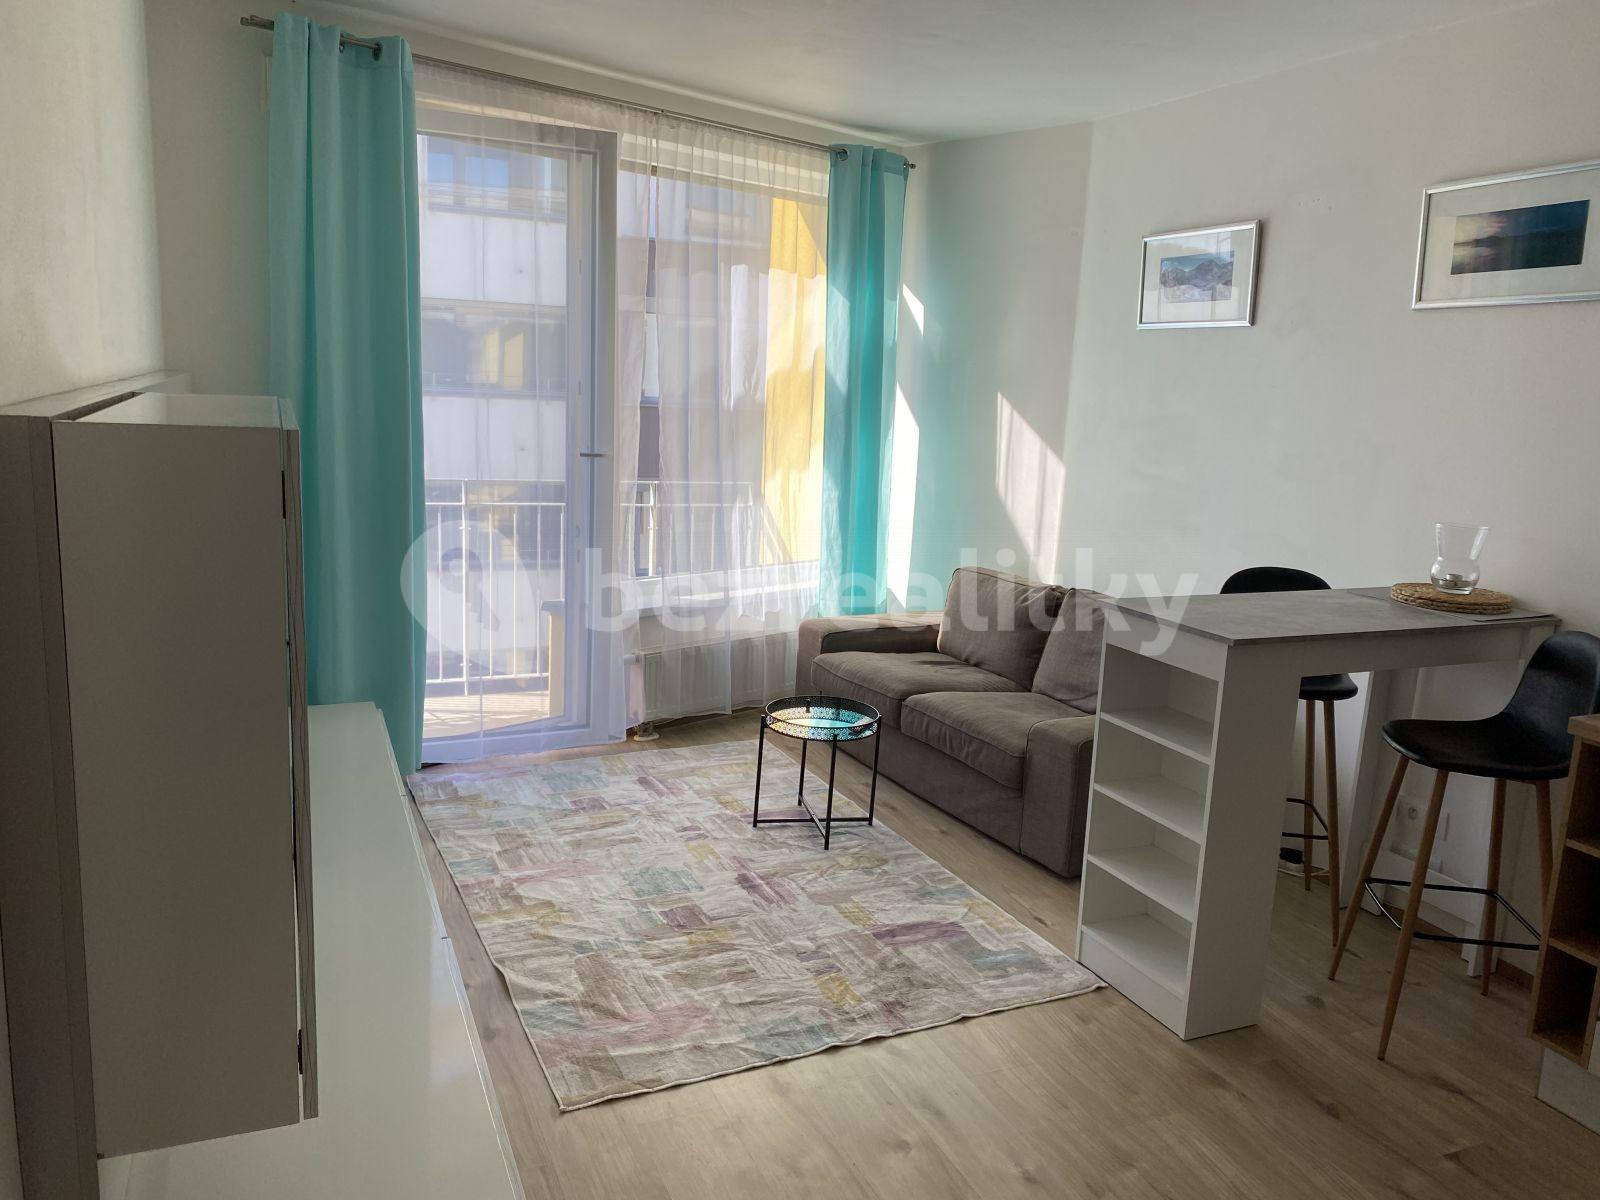 1 bedroom with open-plan kitchen flat to rent, 44 m², Šífařská, Prague, Prague